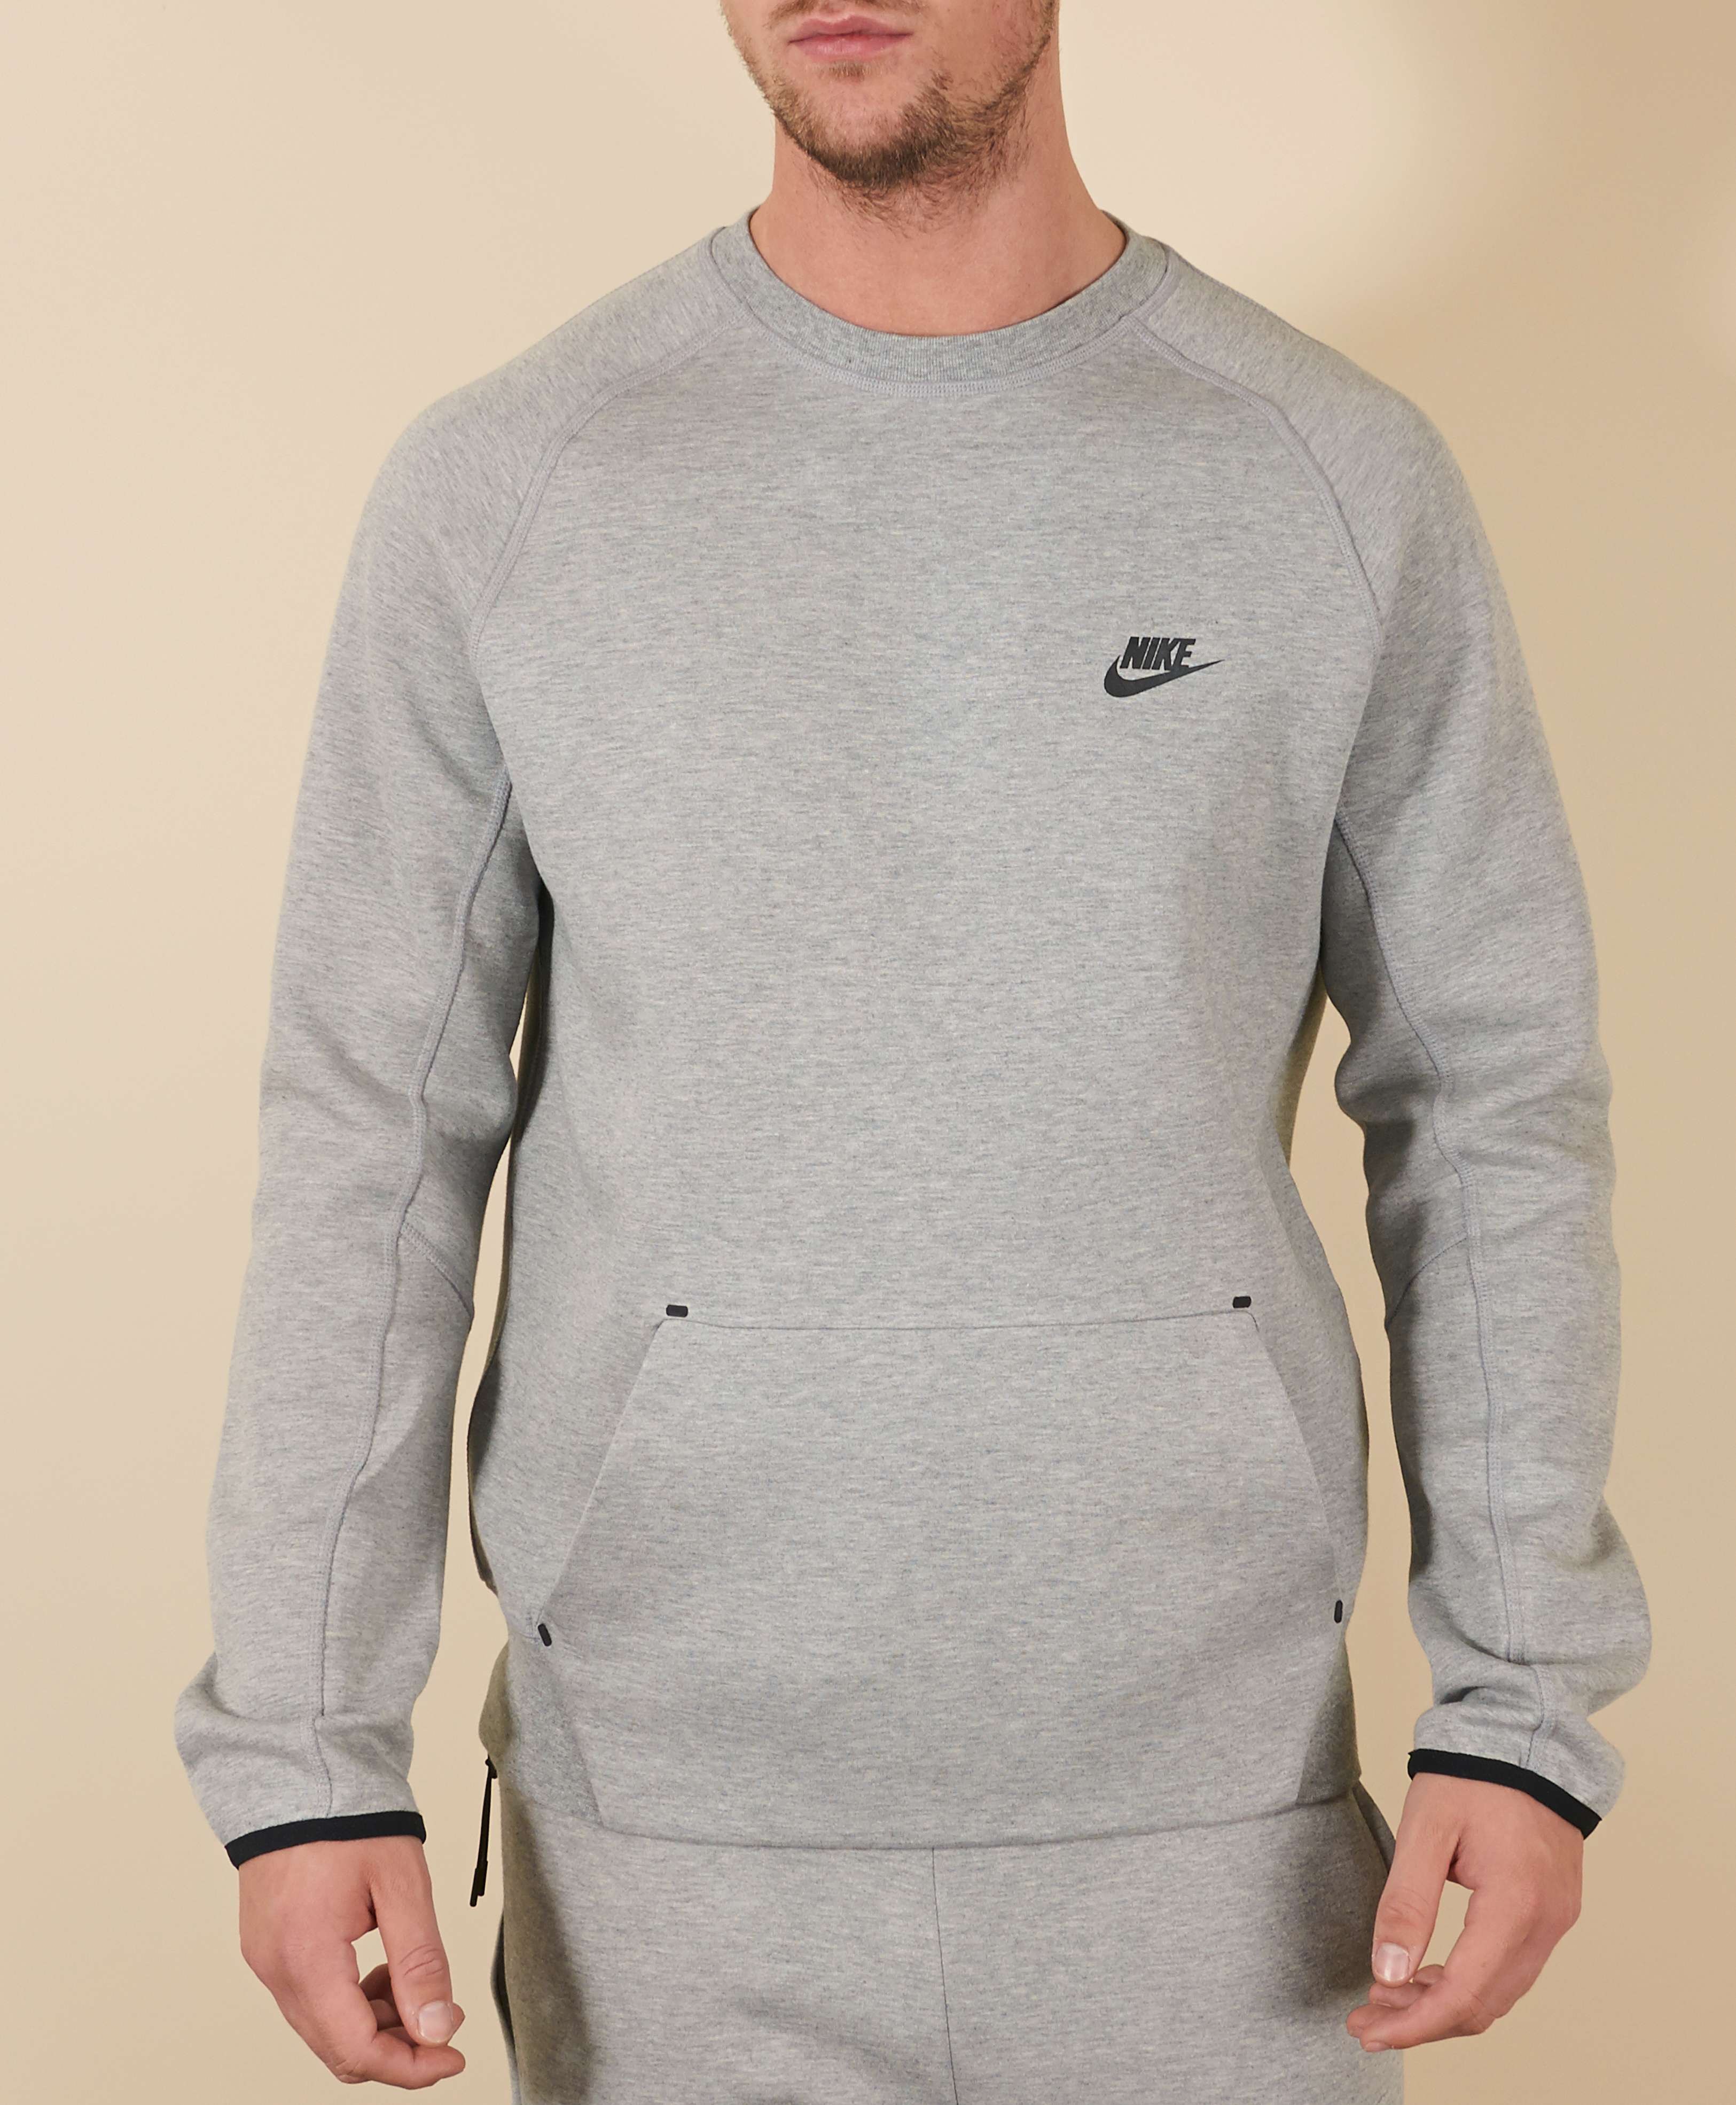 Nike Tech Fleece Crew Sweatshirt | scotts Menswear